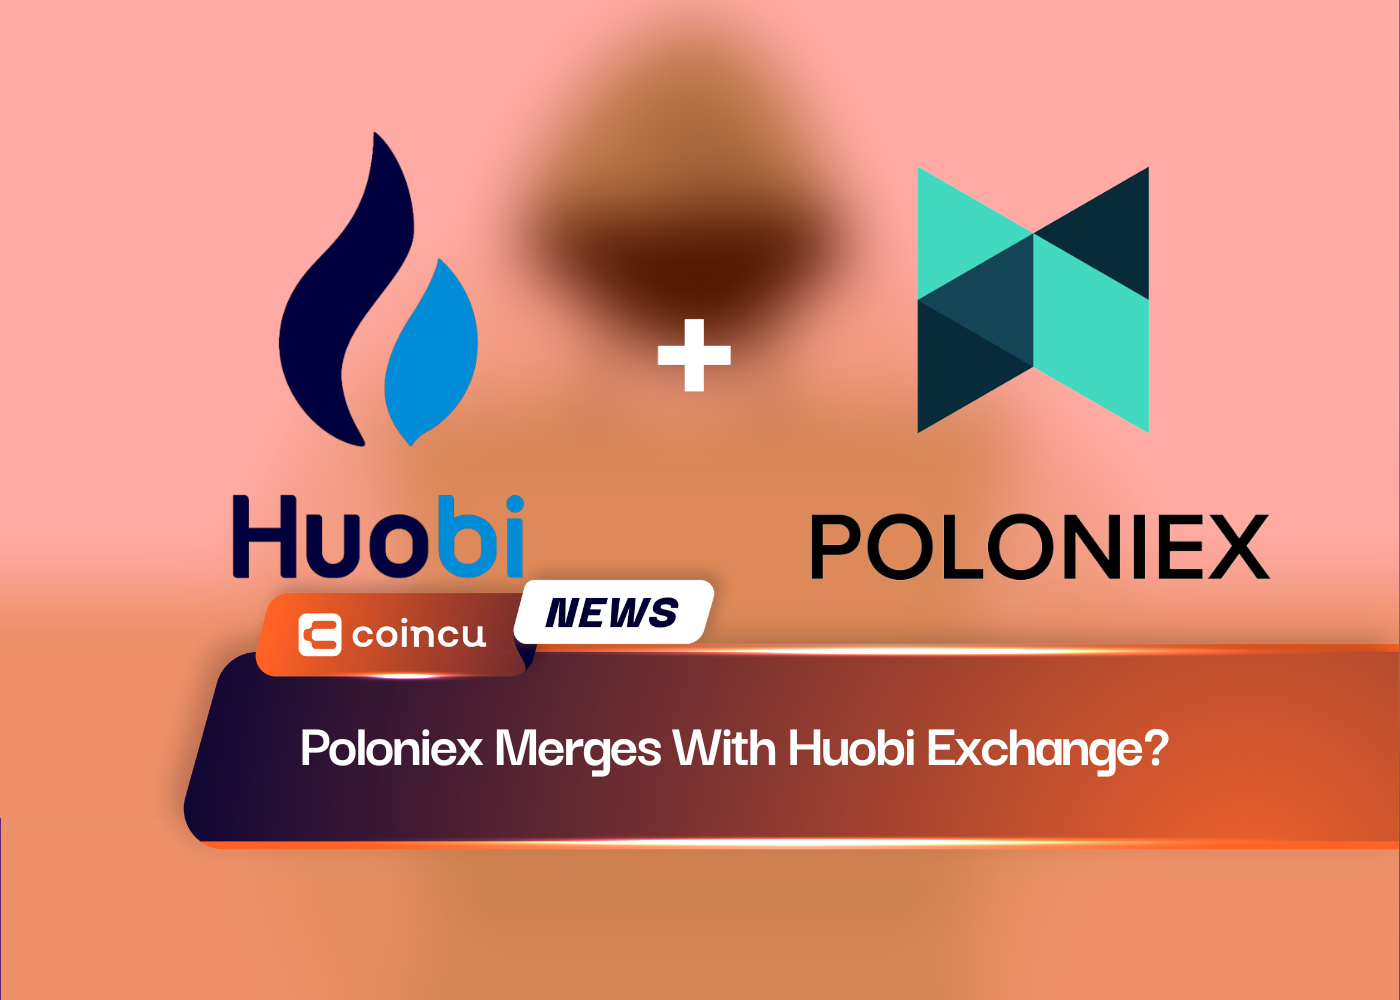 Poloniex Merges With Huobi Exchange?